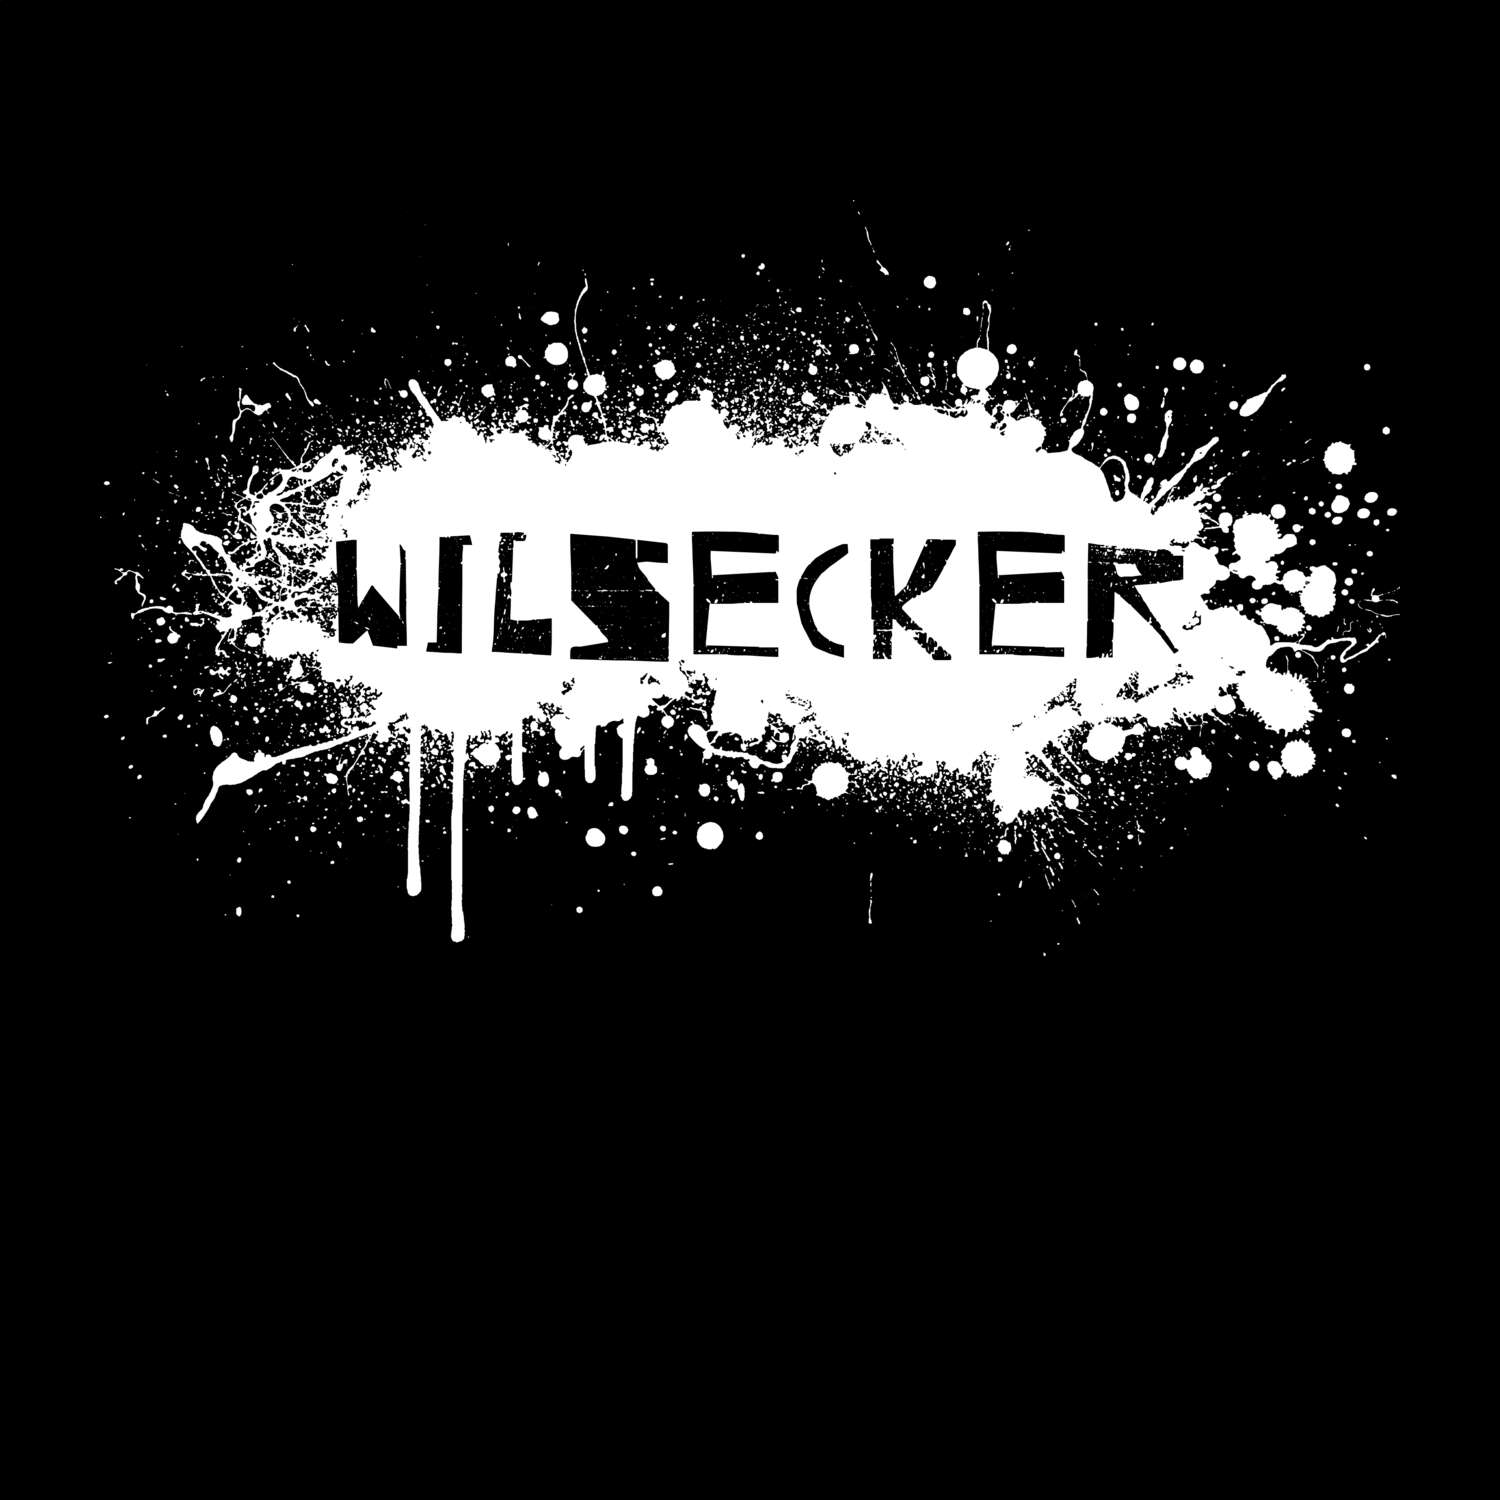 Wilsecker T-Shirt »Paint Splash Punk«